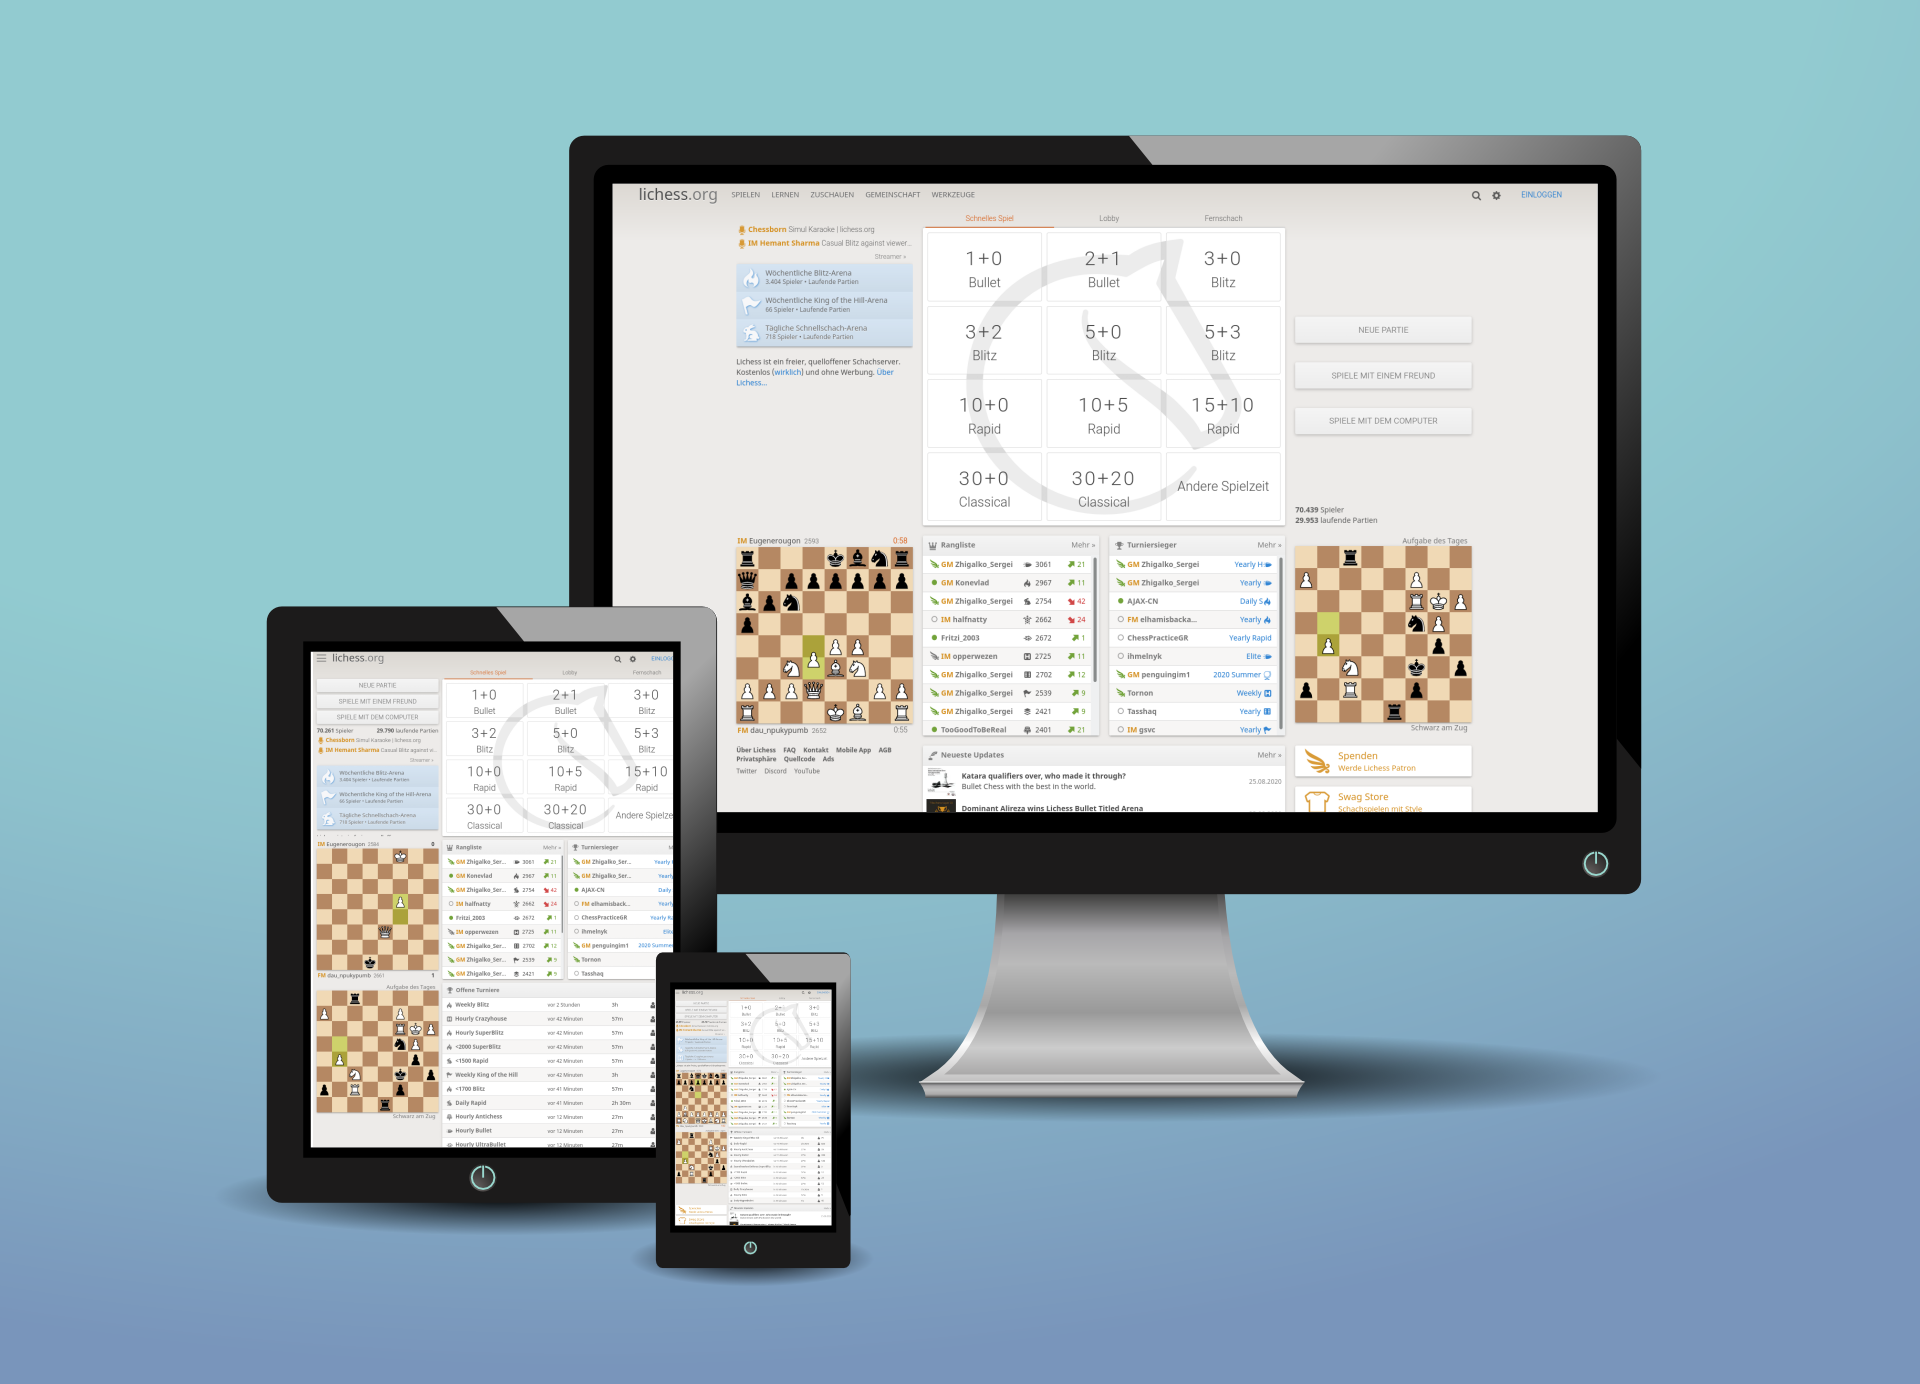 Online Schach - Seite 2 von 3 - Bayerische Schachjugend